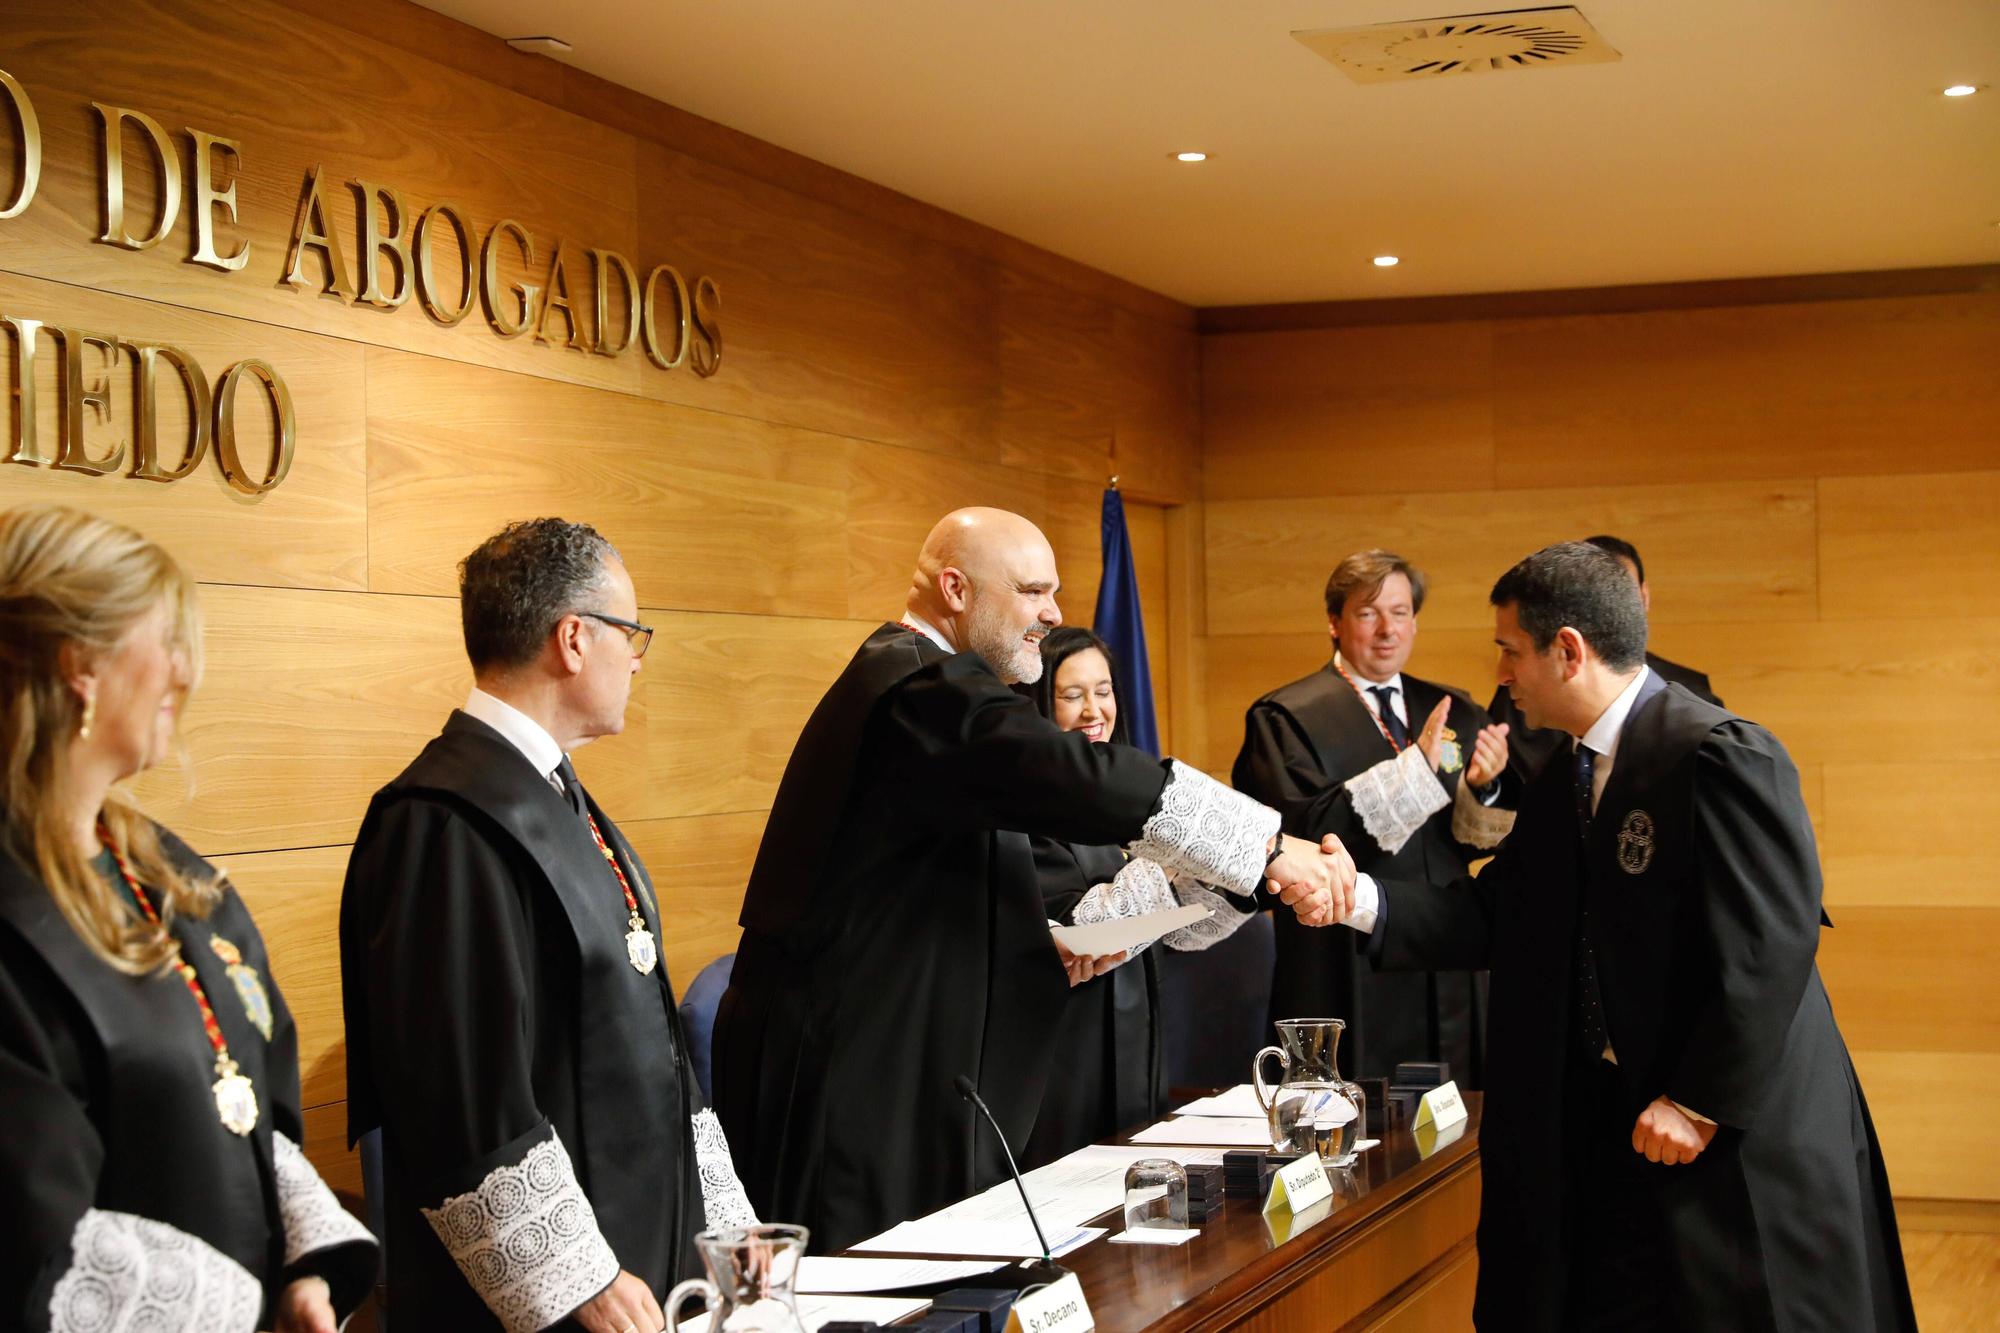 En imágenes | Entrega de medallas de oro y plata del Colegio de Abogados de Oviedo